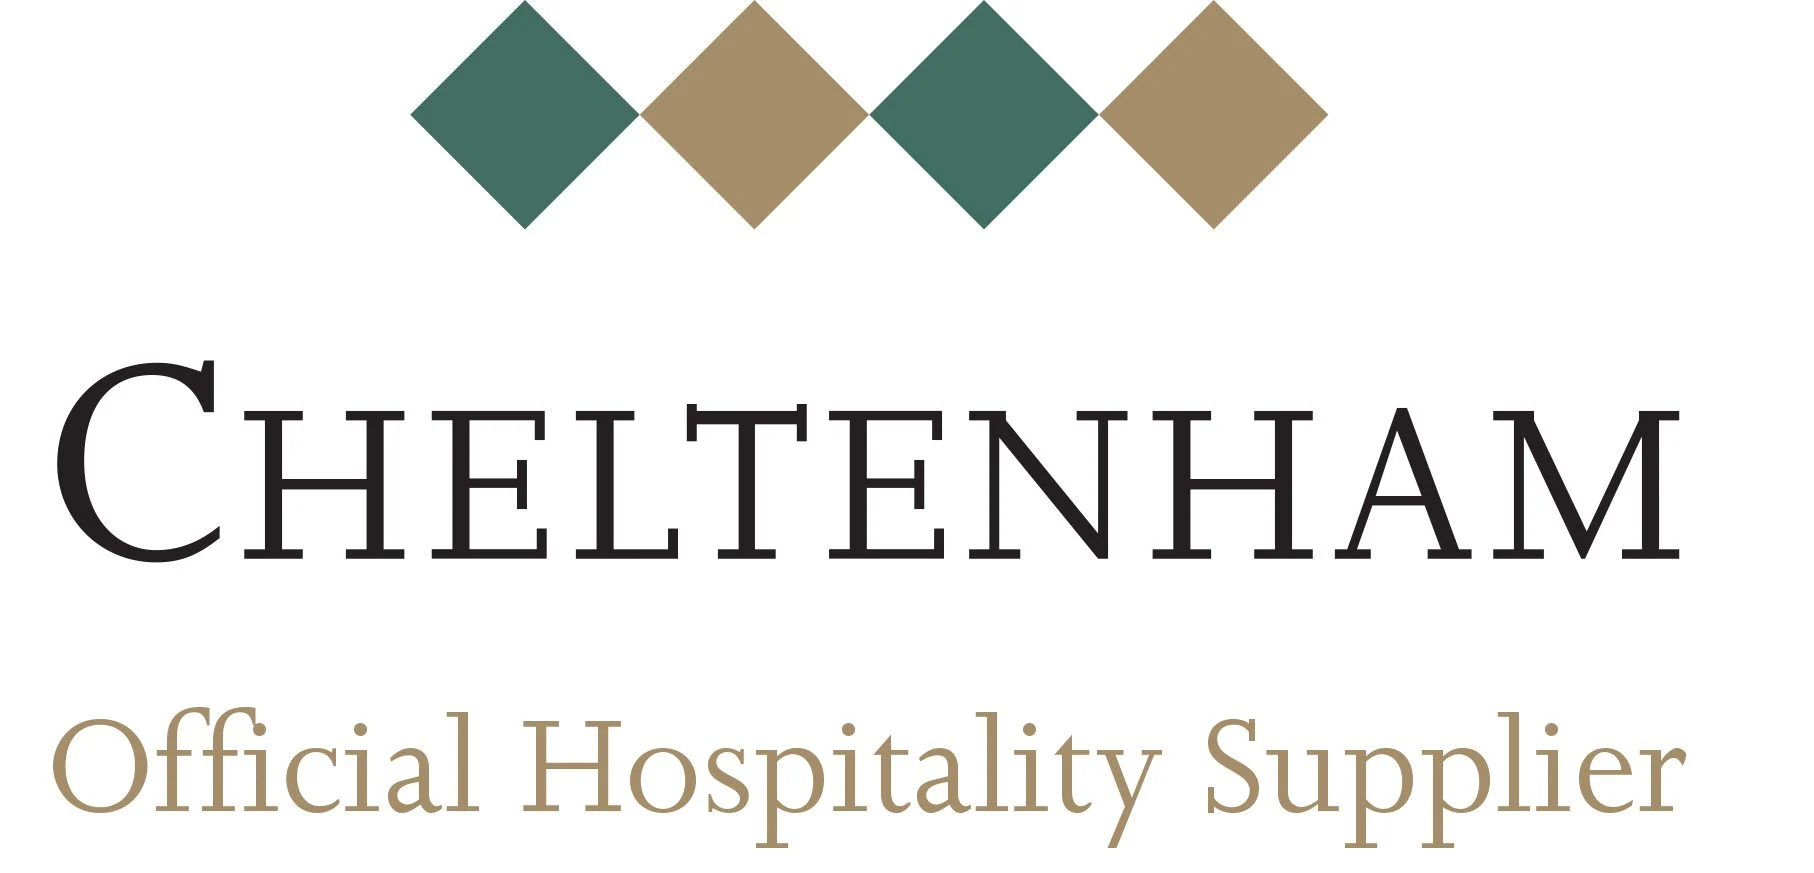 Cheltenham official hospitality supplier